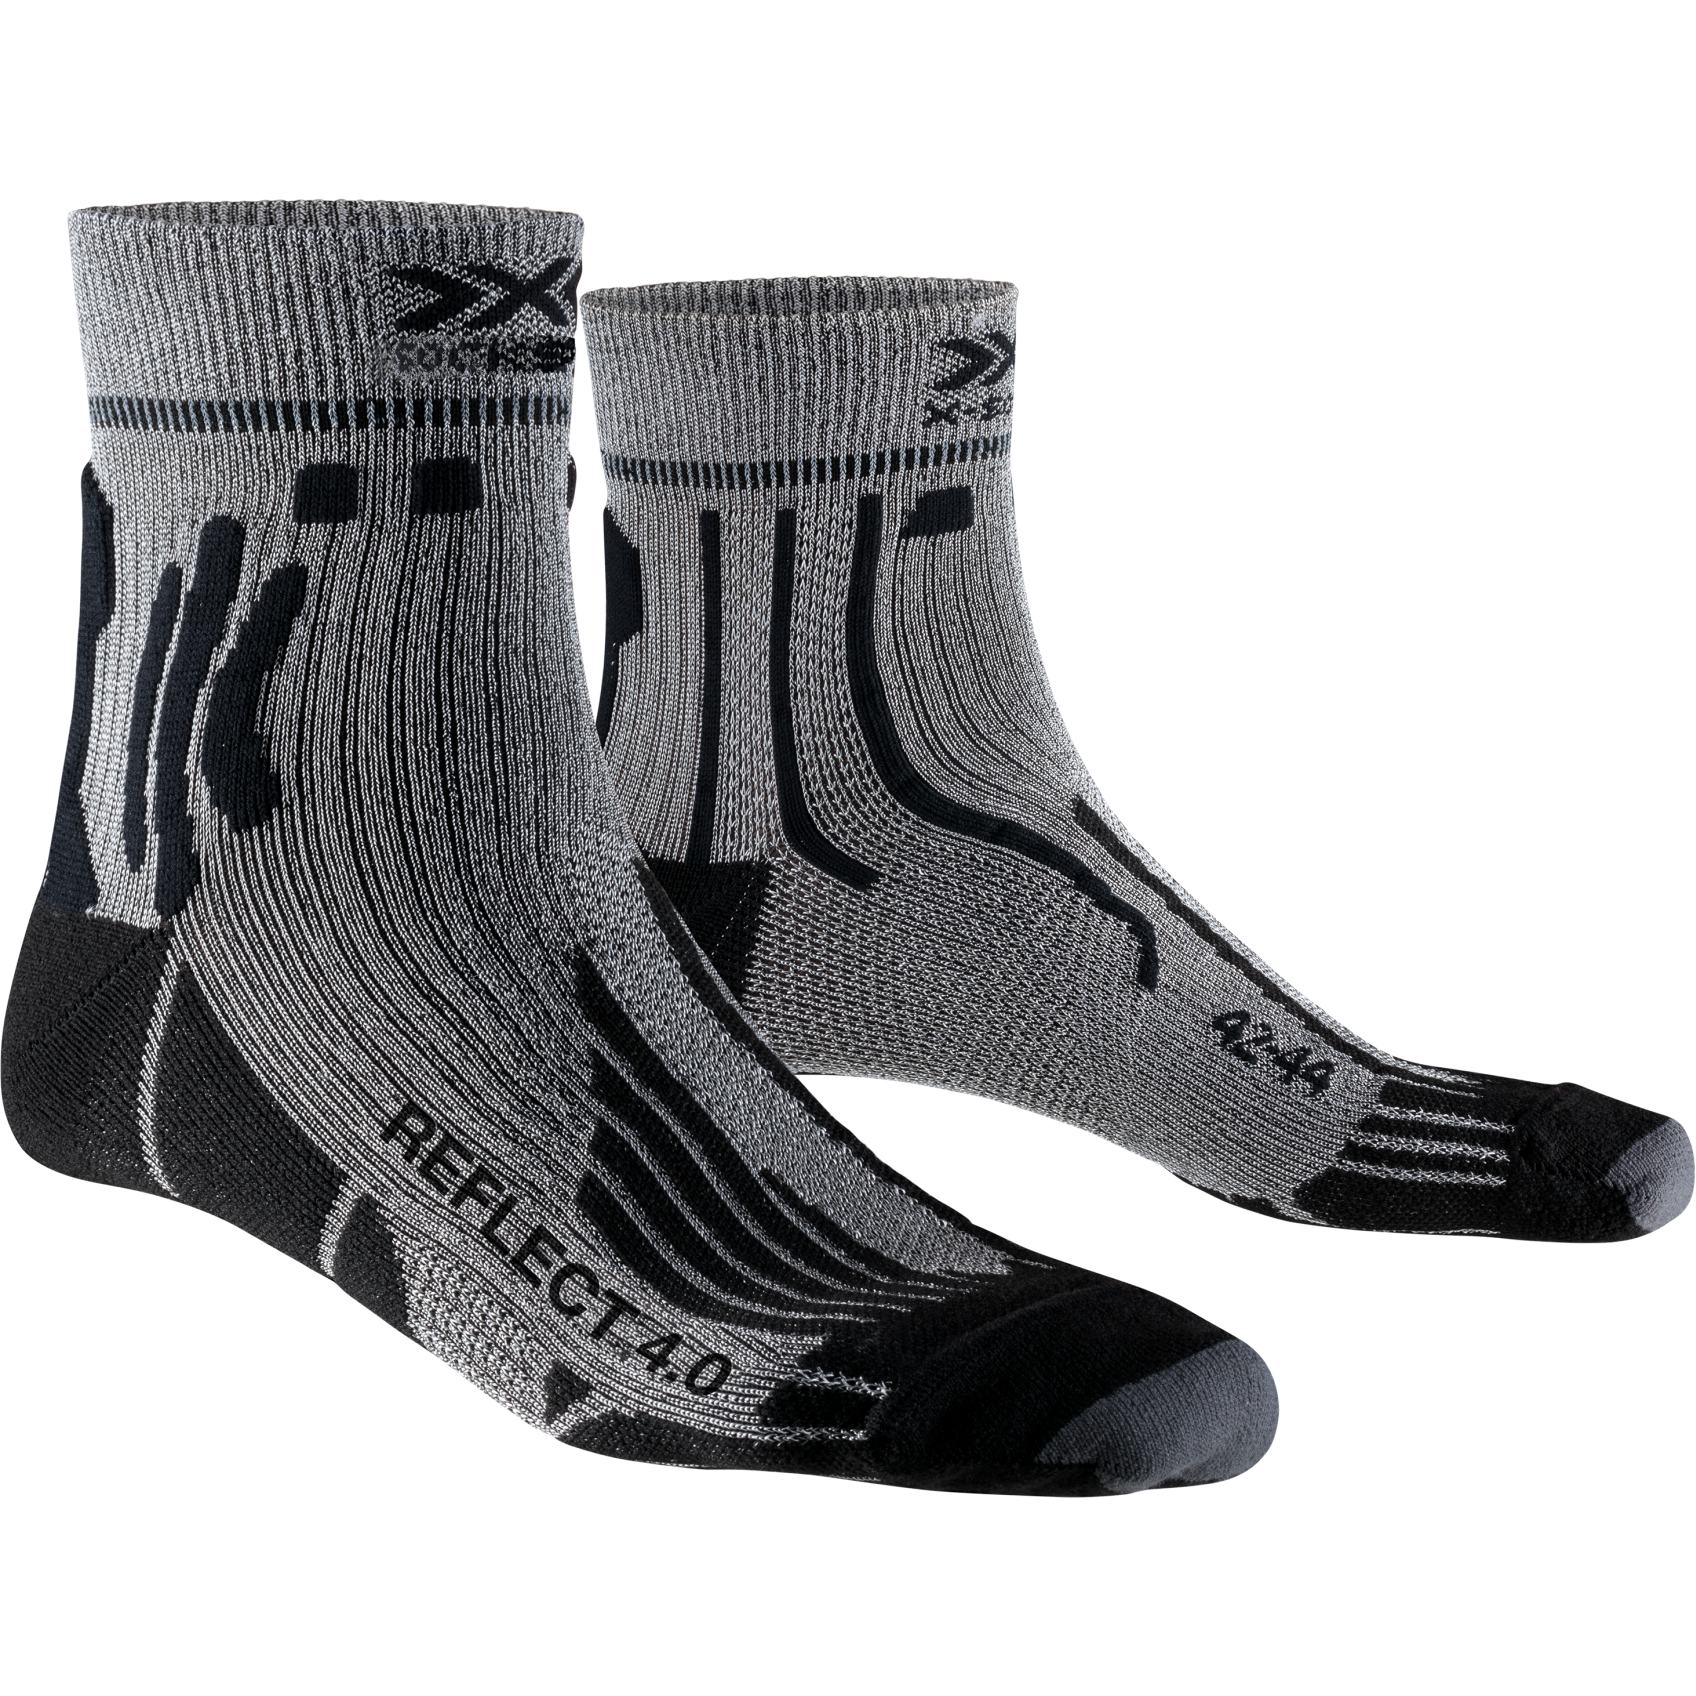 Produktbild von X-Socks Run Speed Reflect 4.0 Damen Laufsocken - anthracite/silver